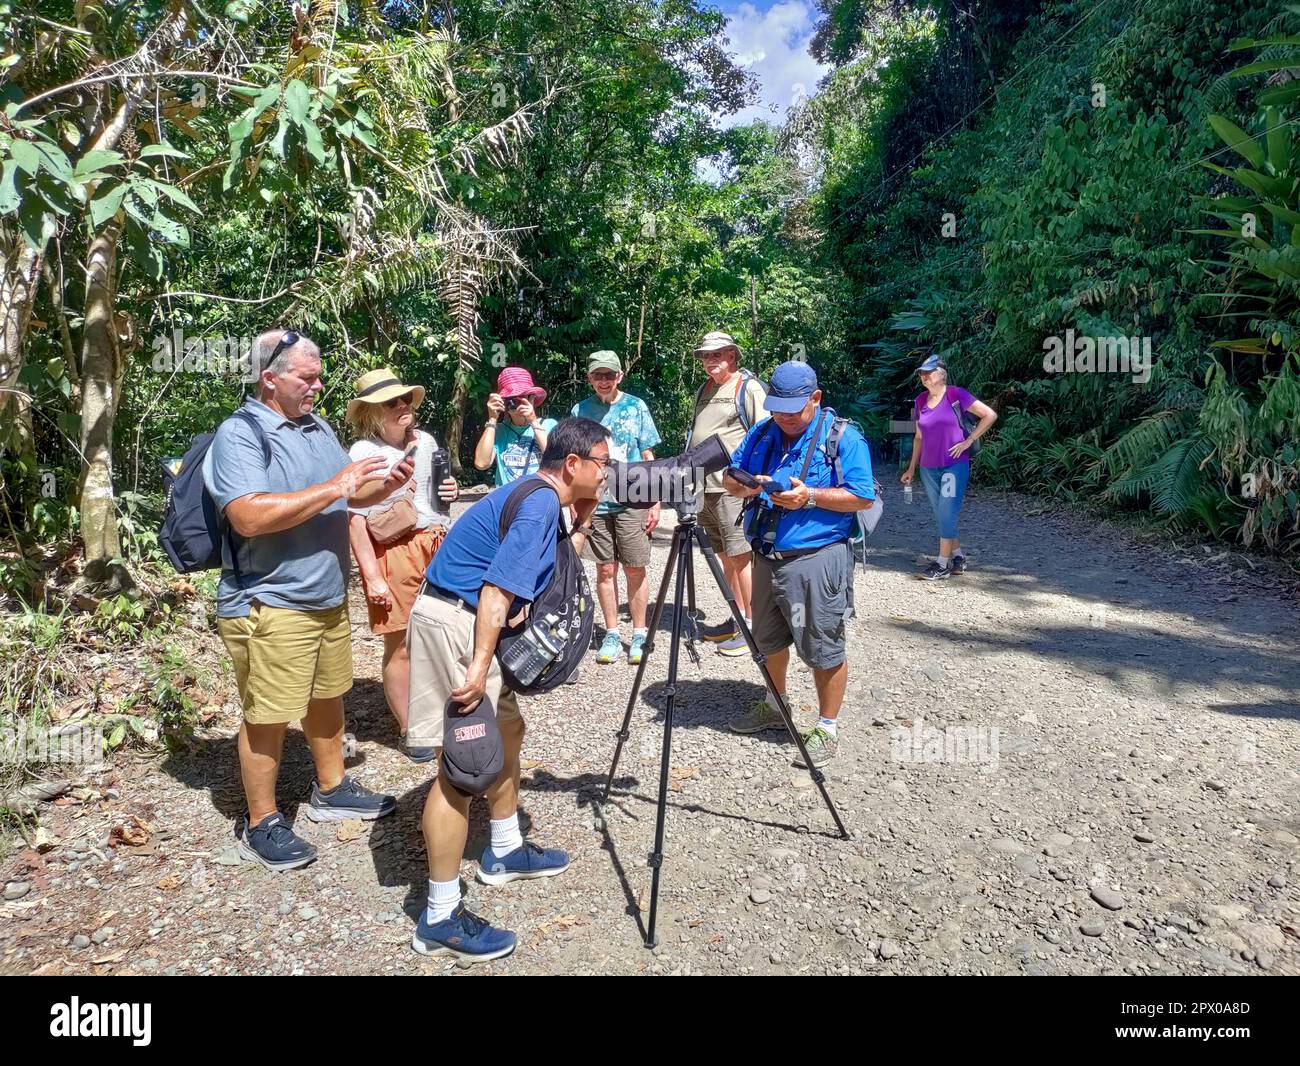 Manuel Antonio National Park, Costa Rica - i visitatori utilizzano un campo visivo per osservare la fauna selvatica nella foresta pluviale. Foto Stock